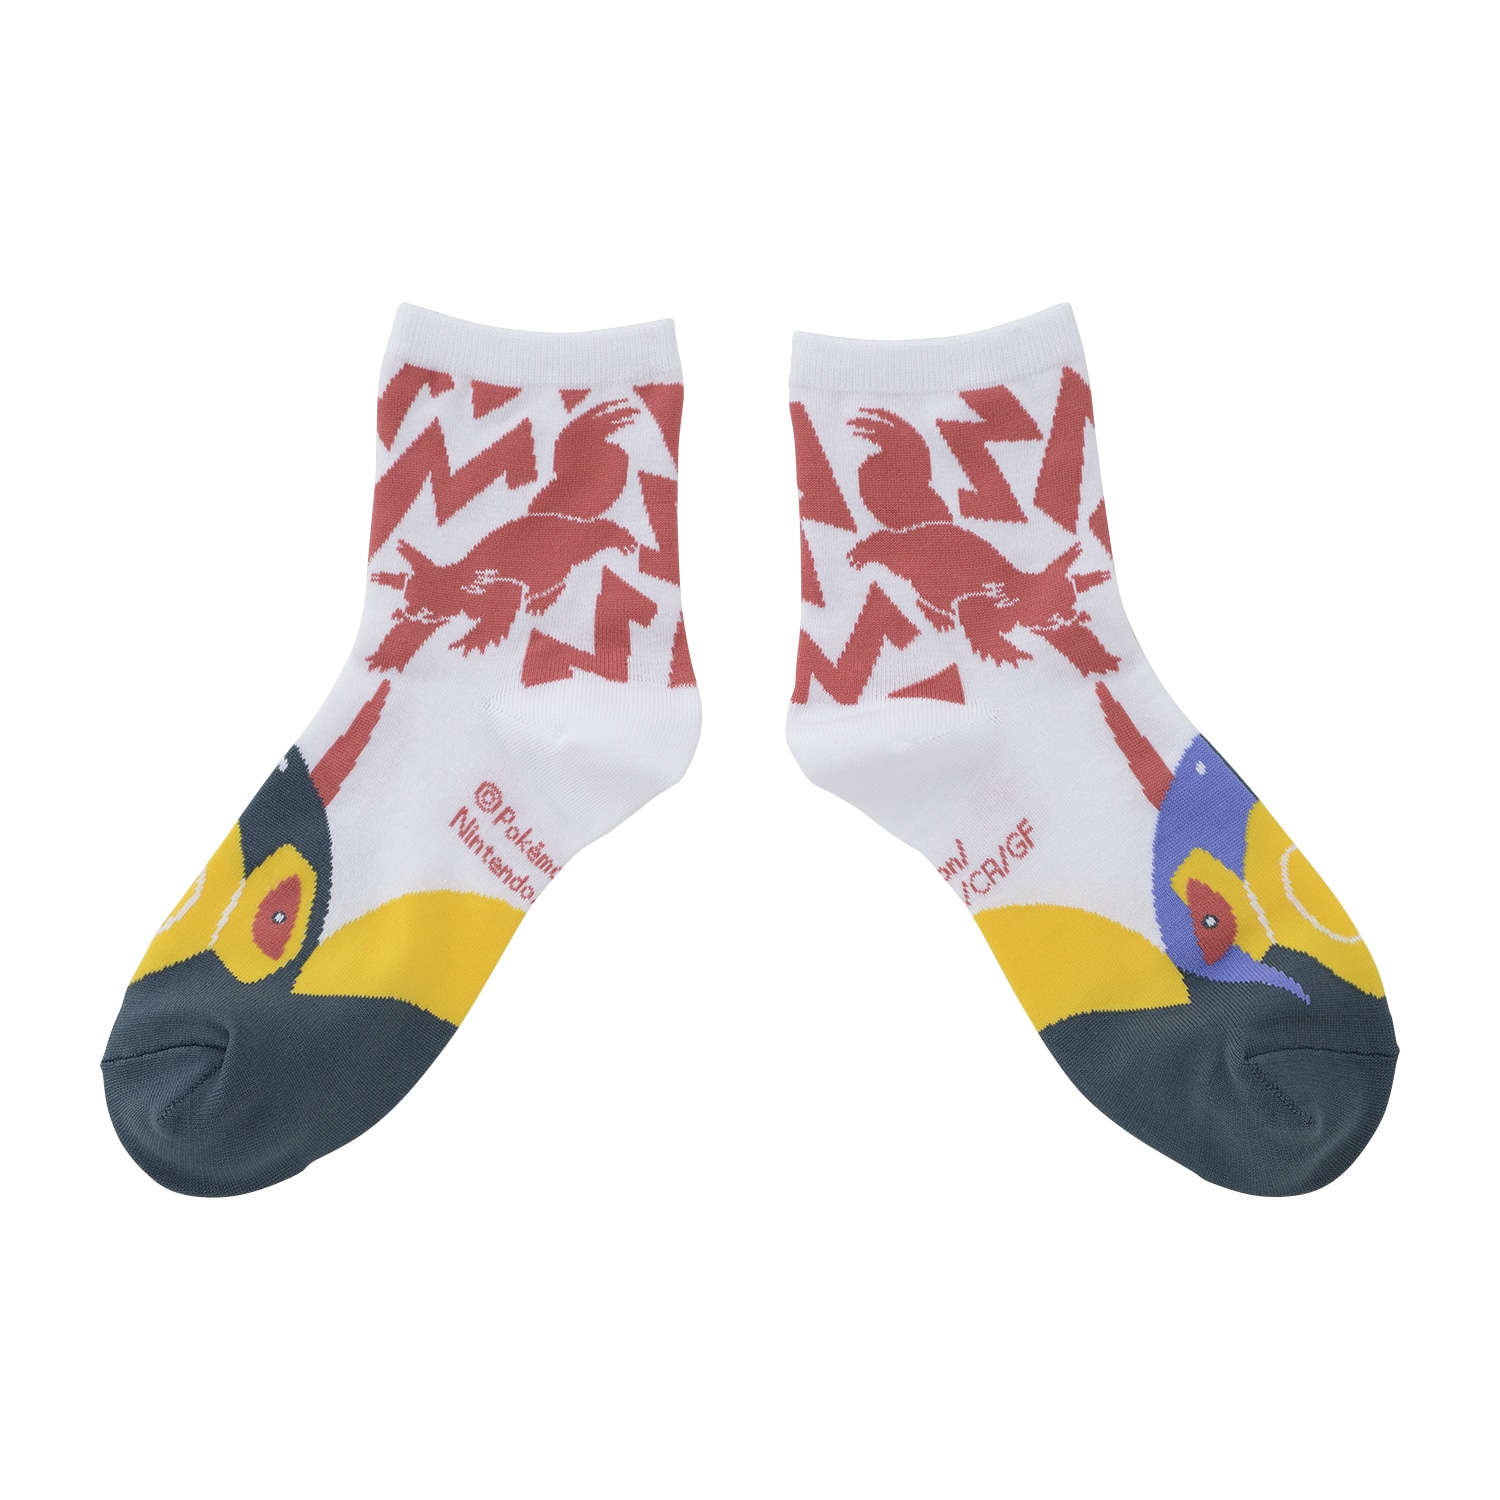 Middle Socks Zangoose (25-27cm)